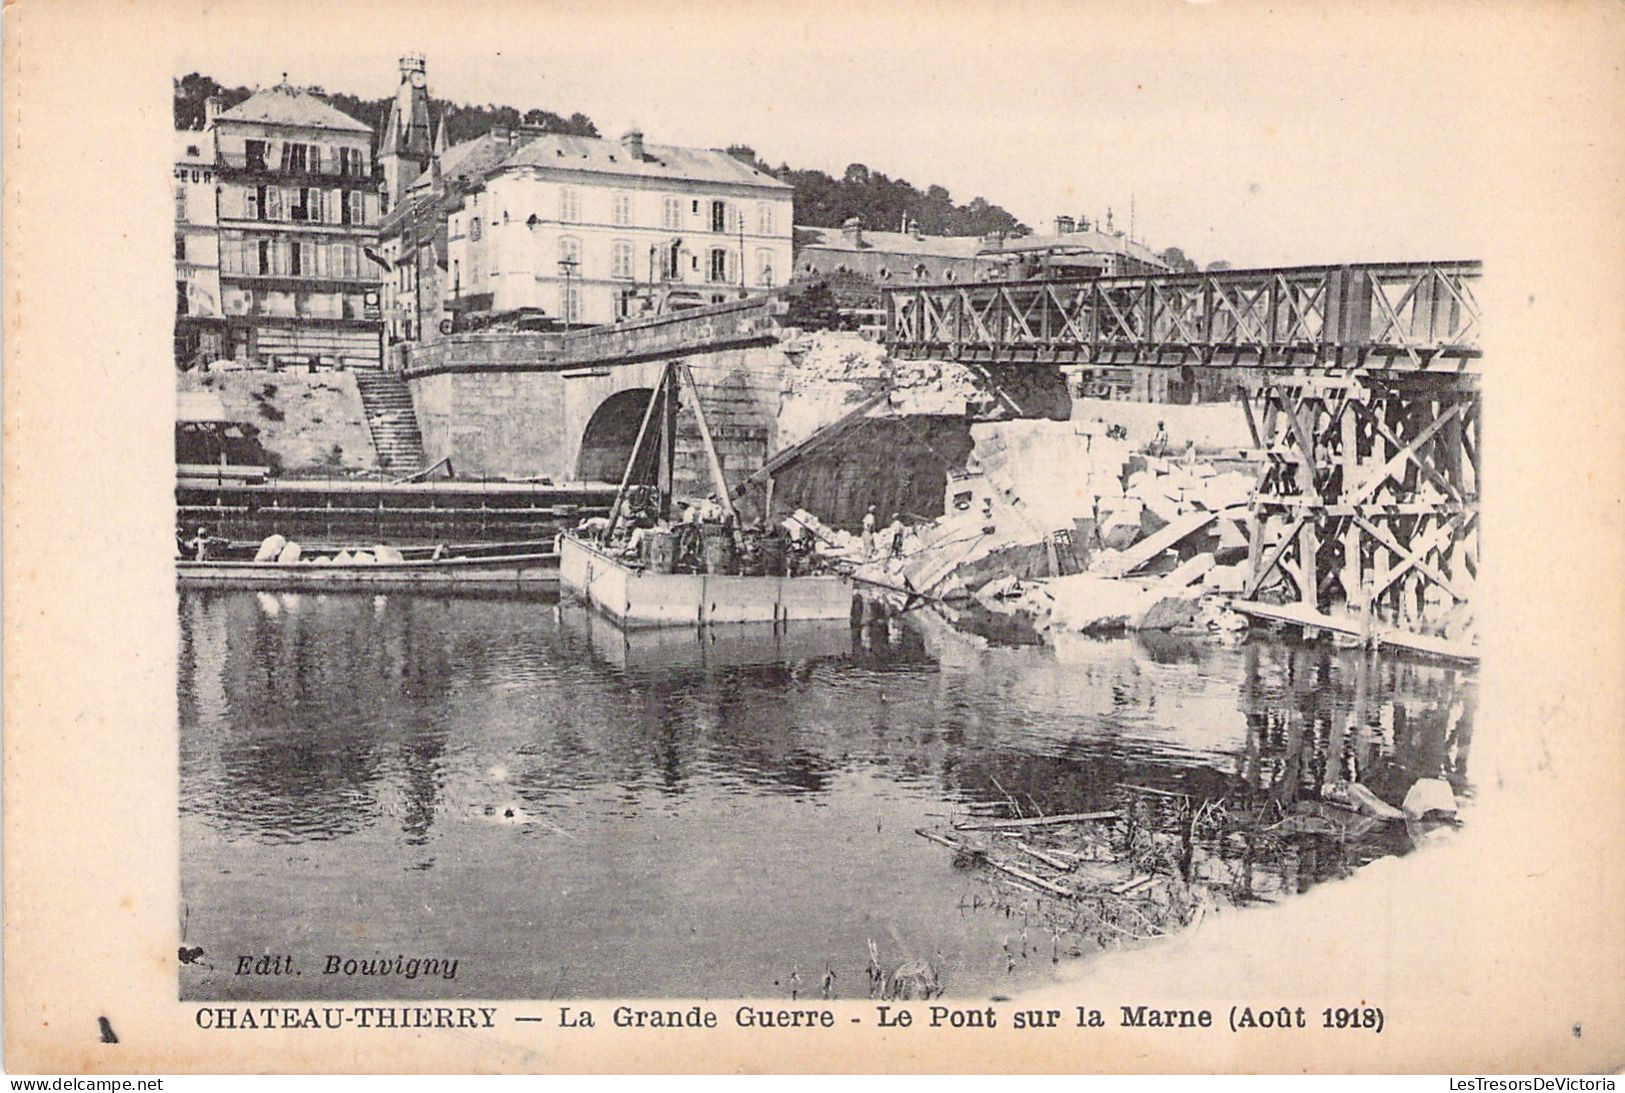 FRANCE - 02 - CHATEAU THIERRY - La Grande Guerre - Le Pont Sur La Marne - 1918 - Edit Bauvigny - Carte Postale Ancienne - Chateau Thierry